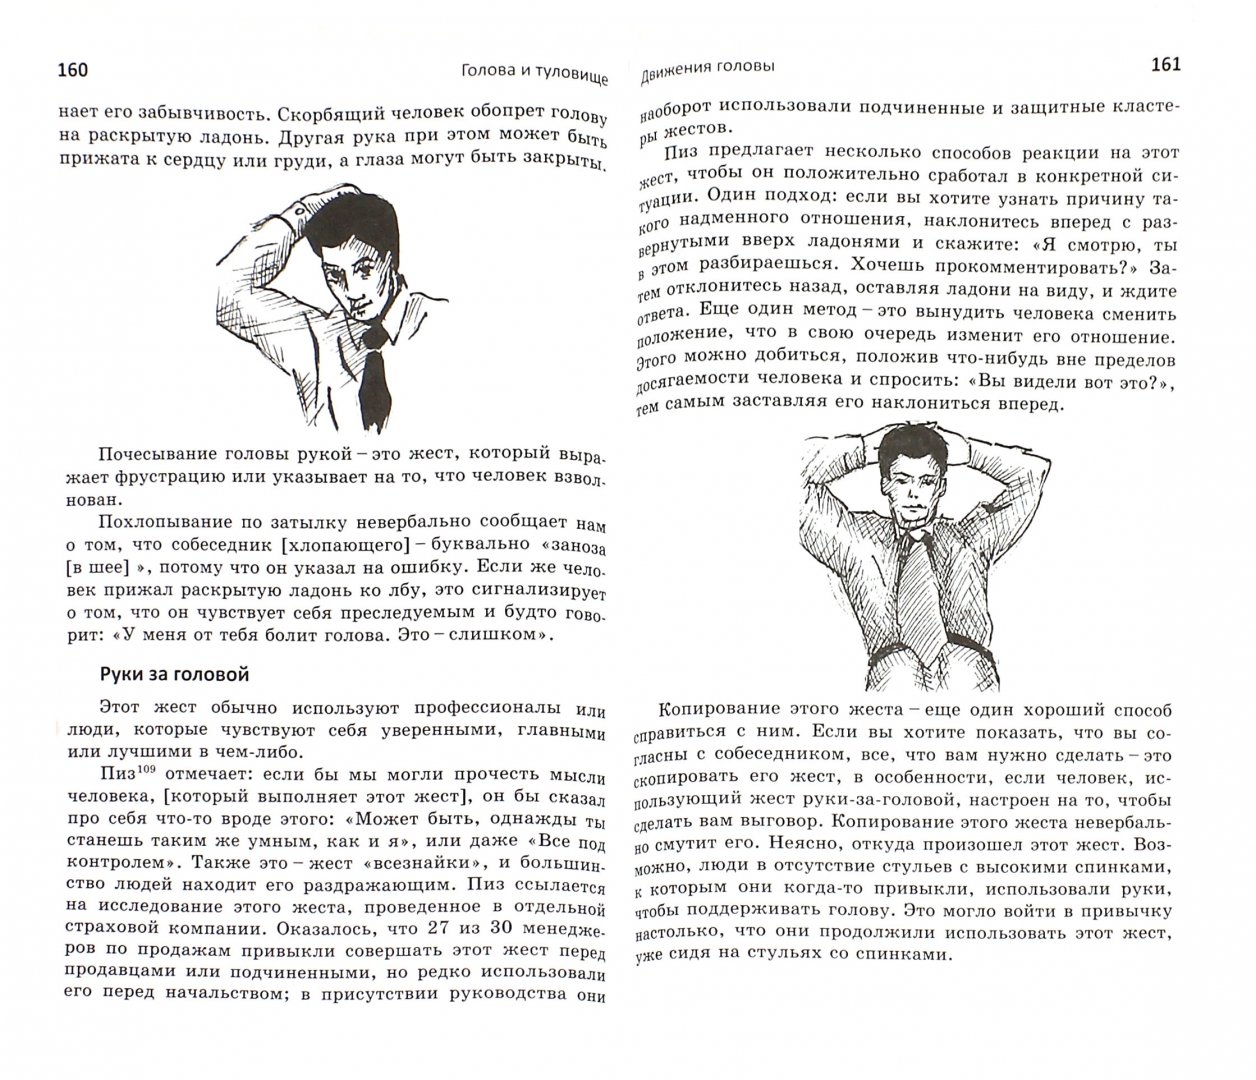 Иллюстрация 1 из 6 для Язык тела. Руководство для профессионалов - Хедвиг Льюис | Лабиринт - книги. Источник: Лабиринт